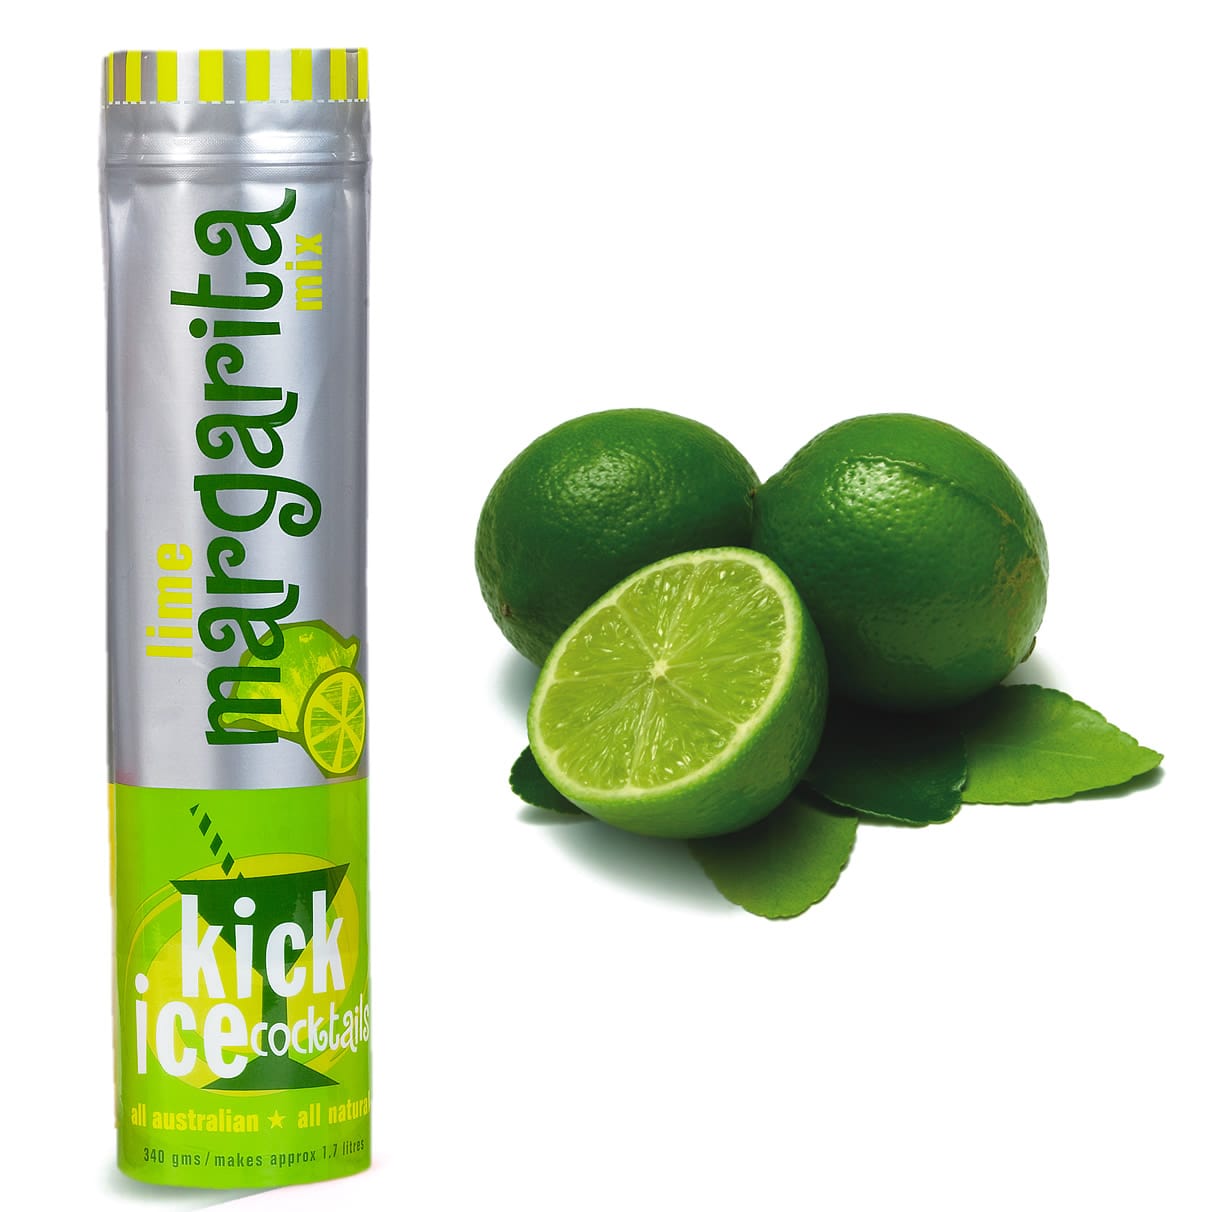 Lime Margarita Mix